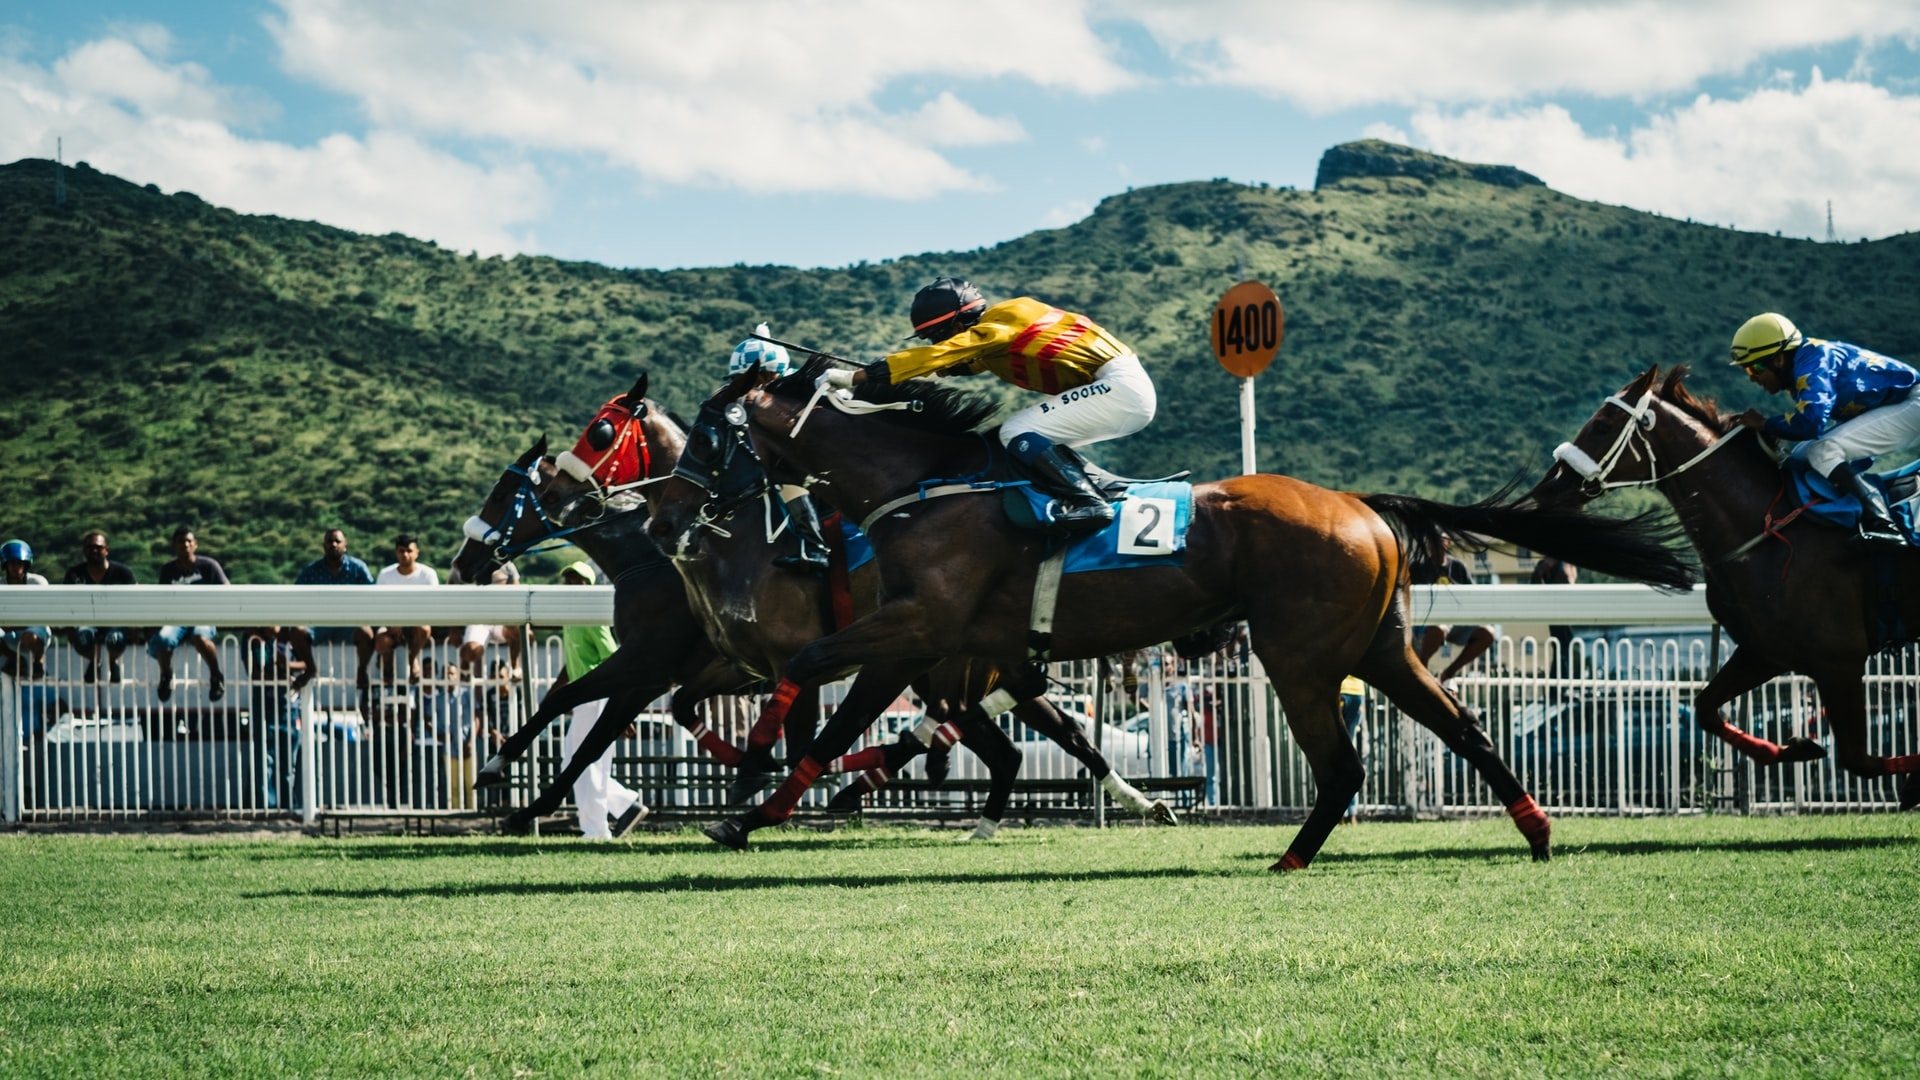 A lóverseny fogadás online világa komoly lehetőségeket kínál